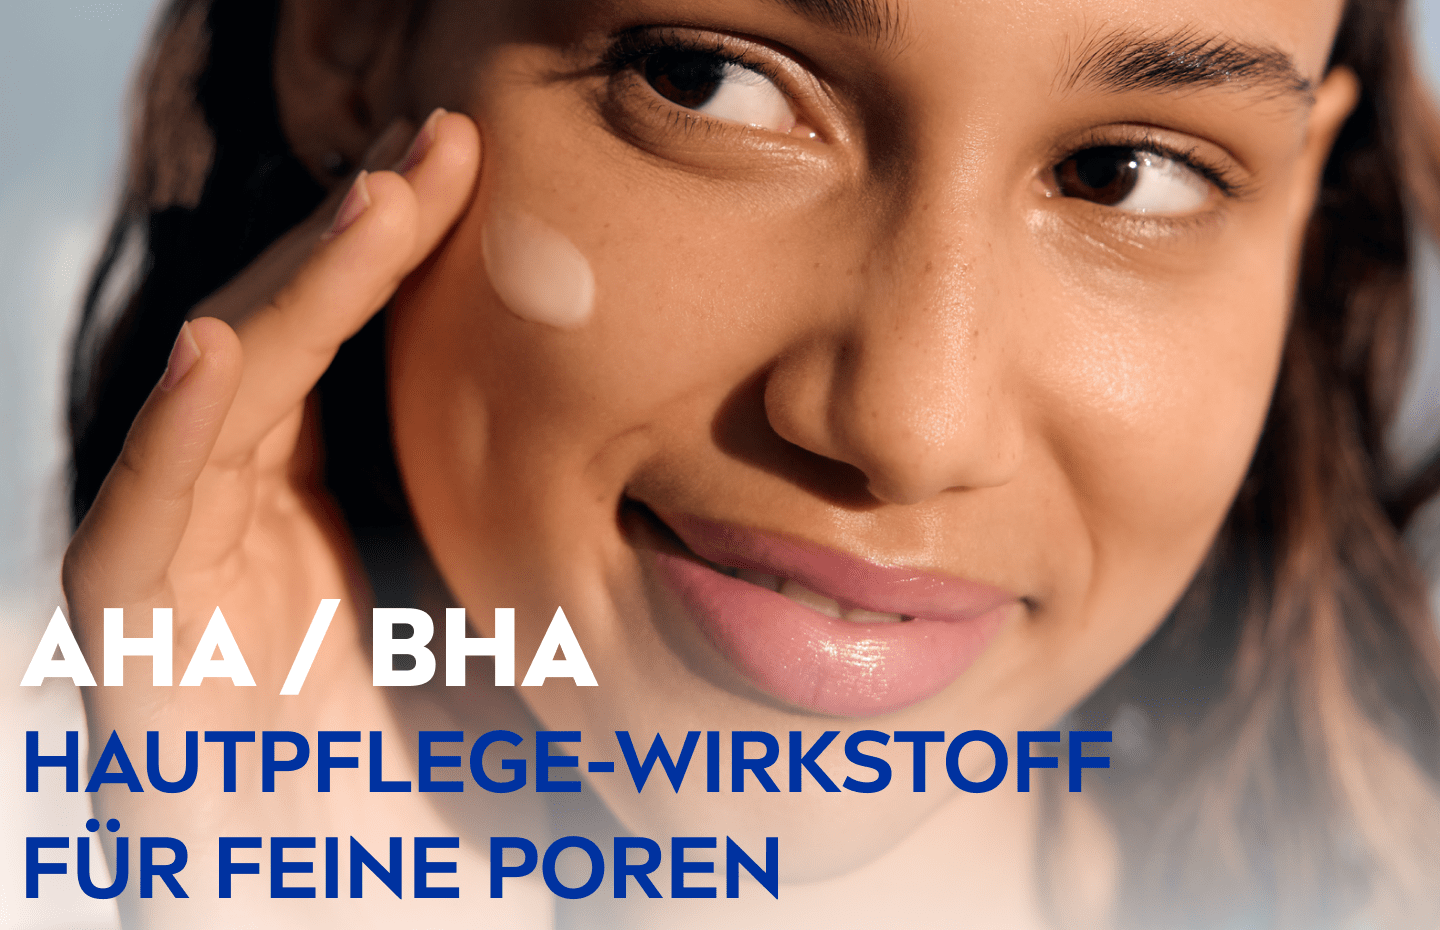 AHA / BHA: Hautpflege-Wirkstoff für feine Poren